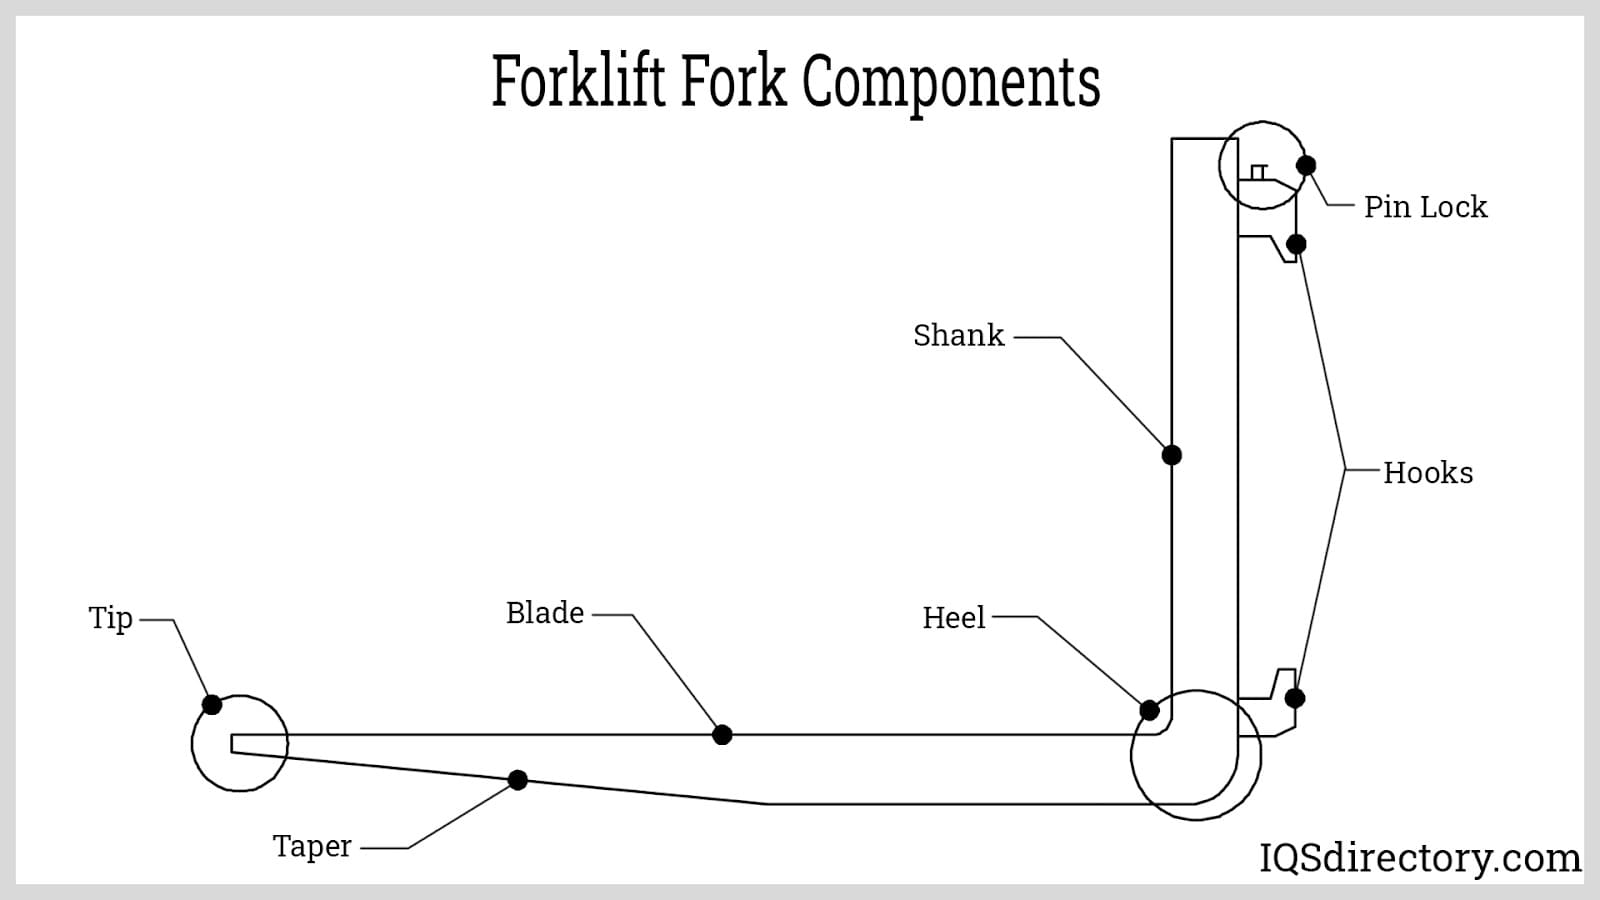 Forklift Fork Components